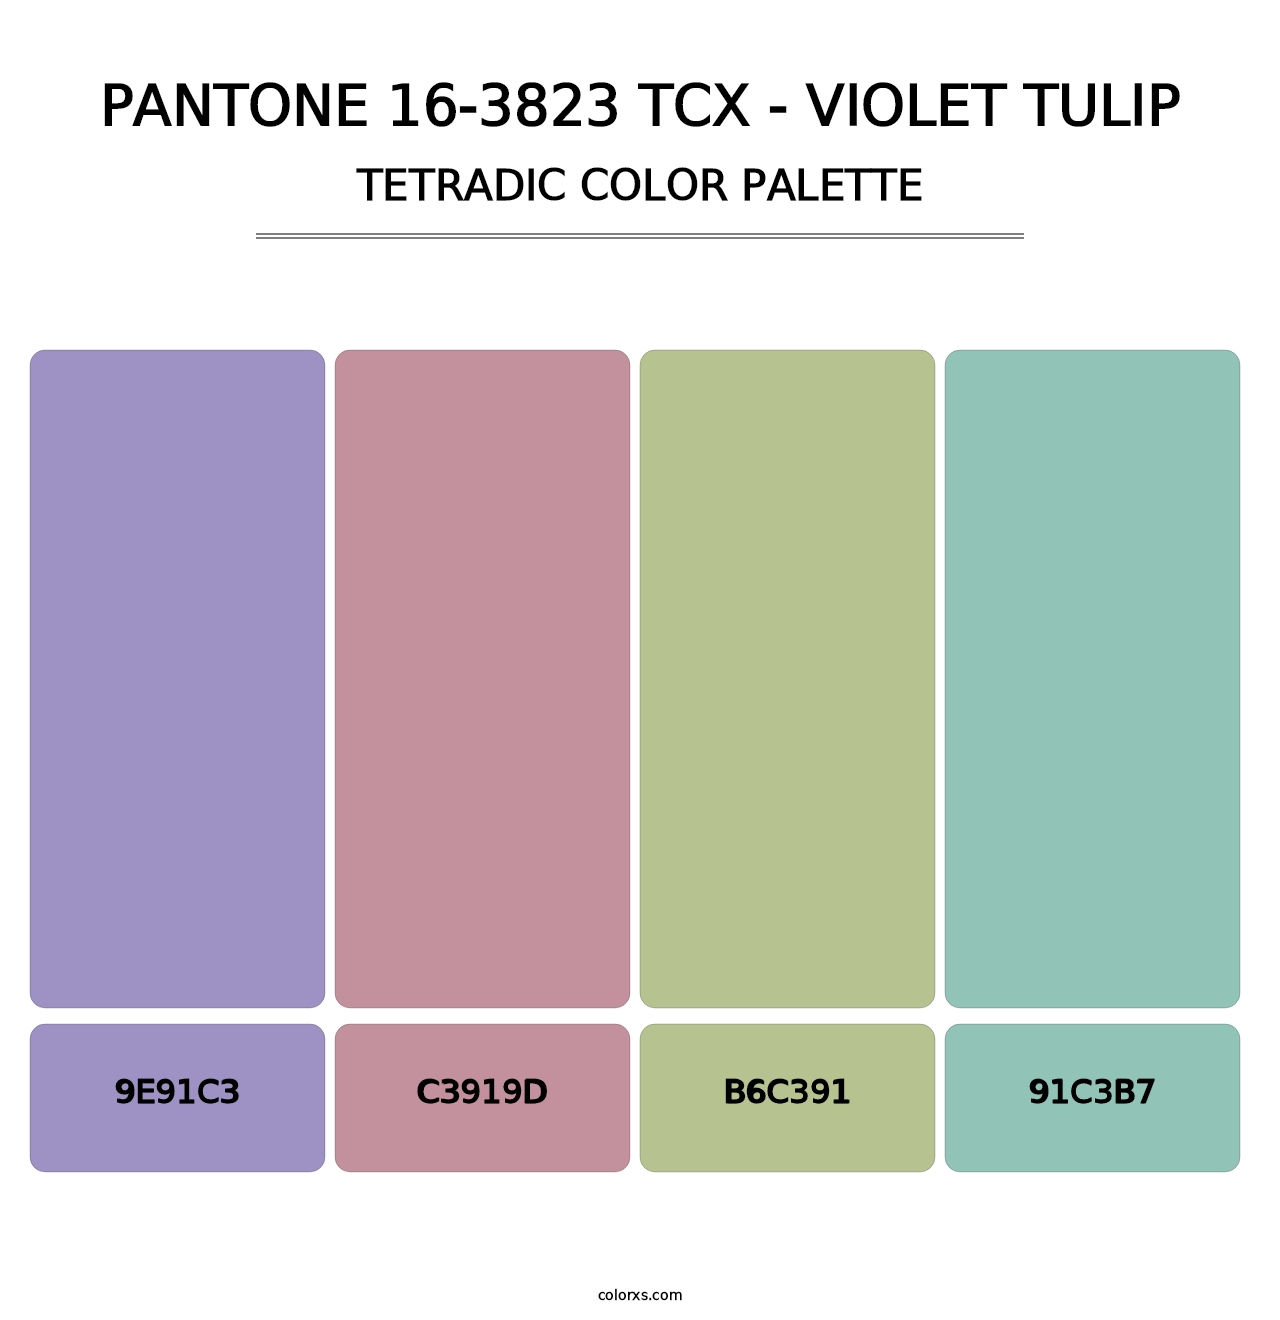 PANTONE 16-3823 TCX - Violet Tulip - Tetradic Color Palette